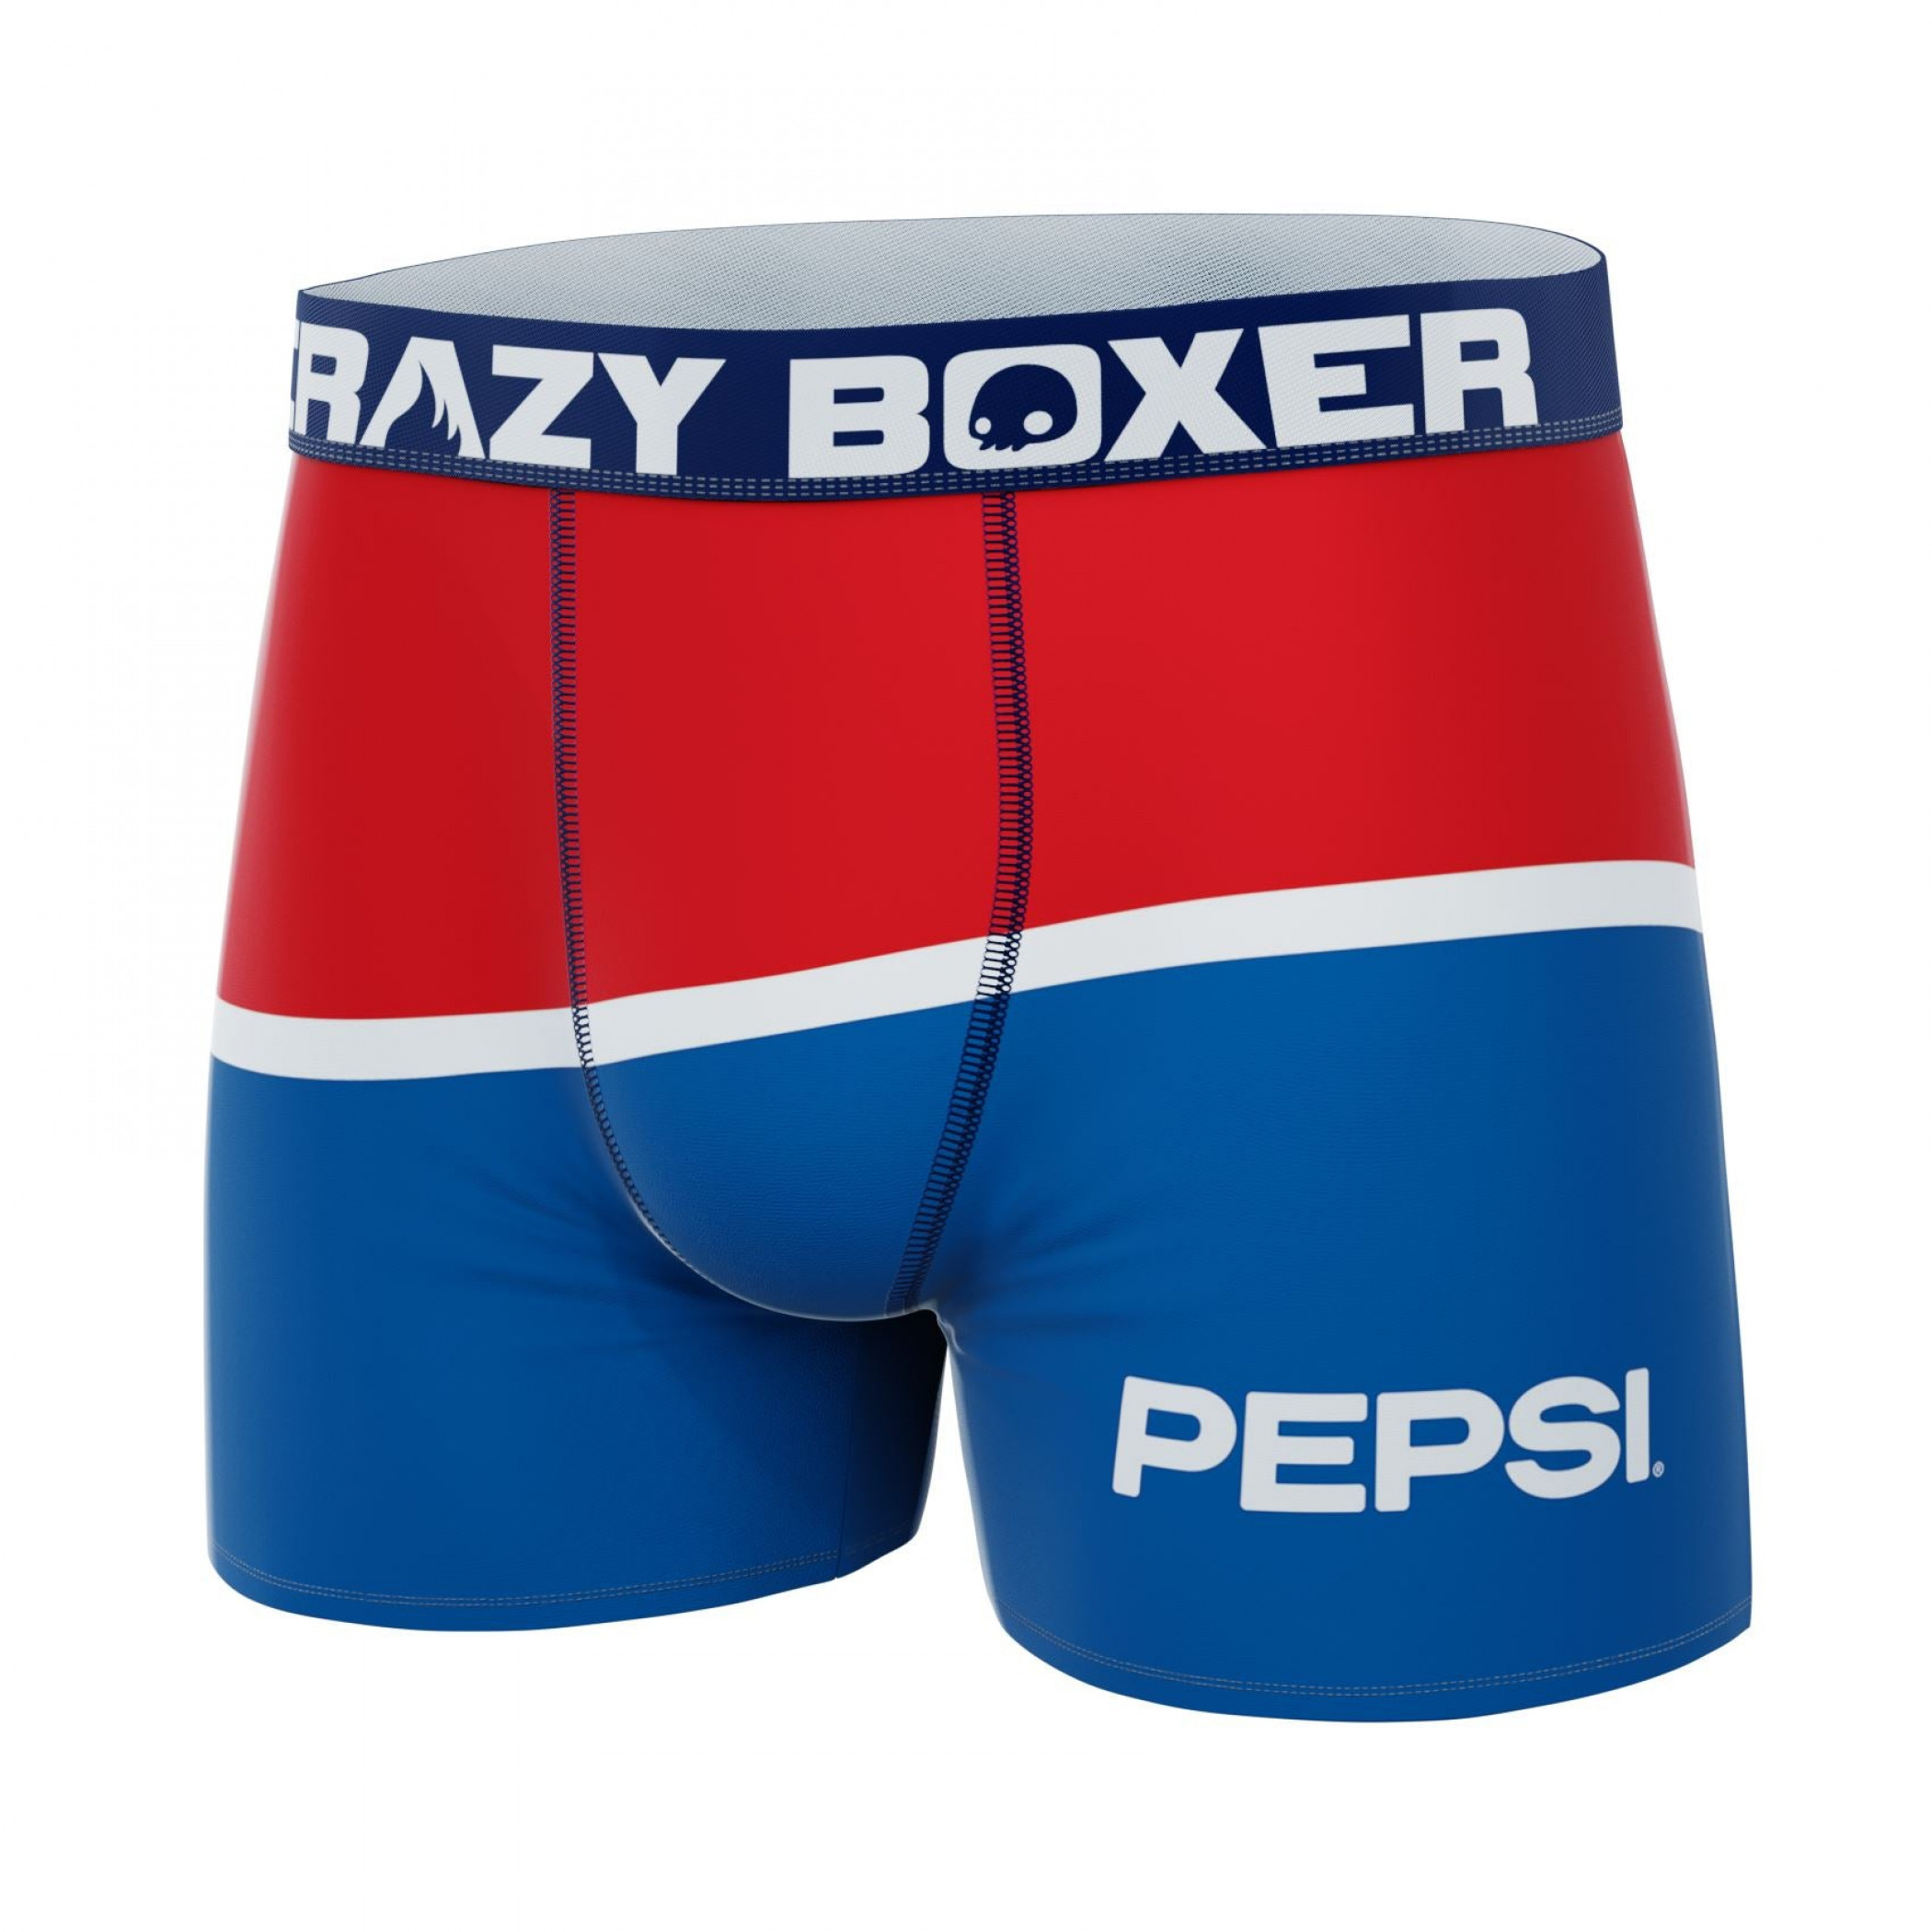 Crazy Boxer Pepsi Cola Large Color Logo Print Men's Boxer Briefs